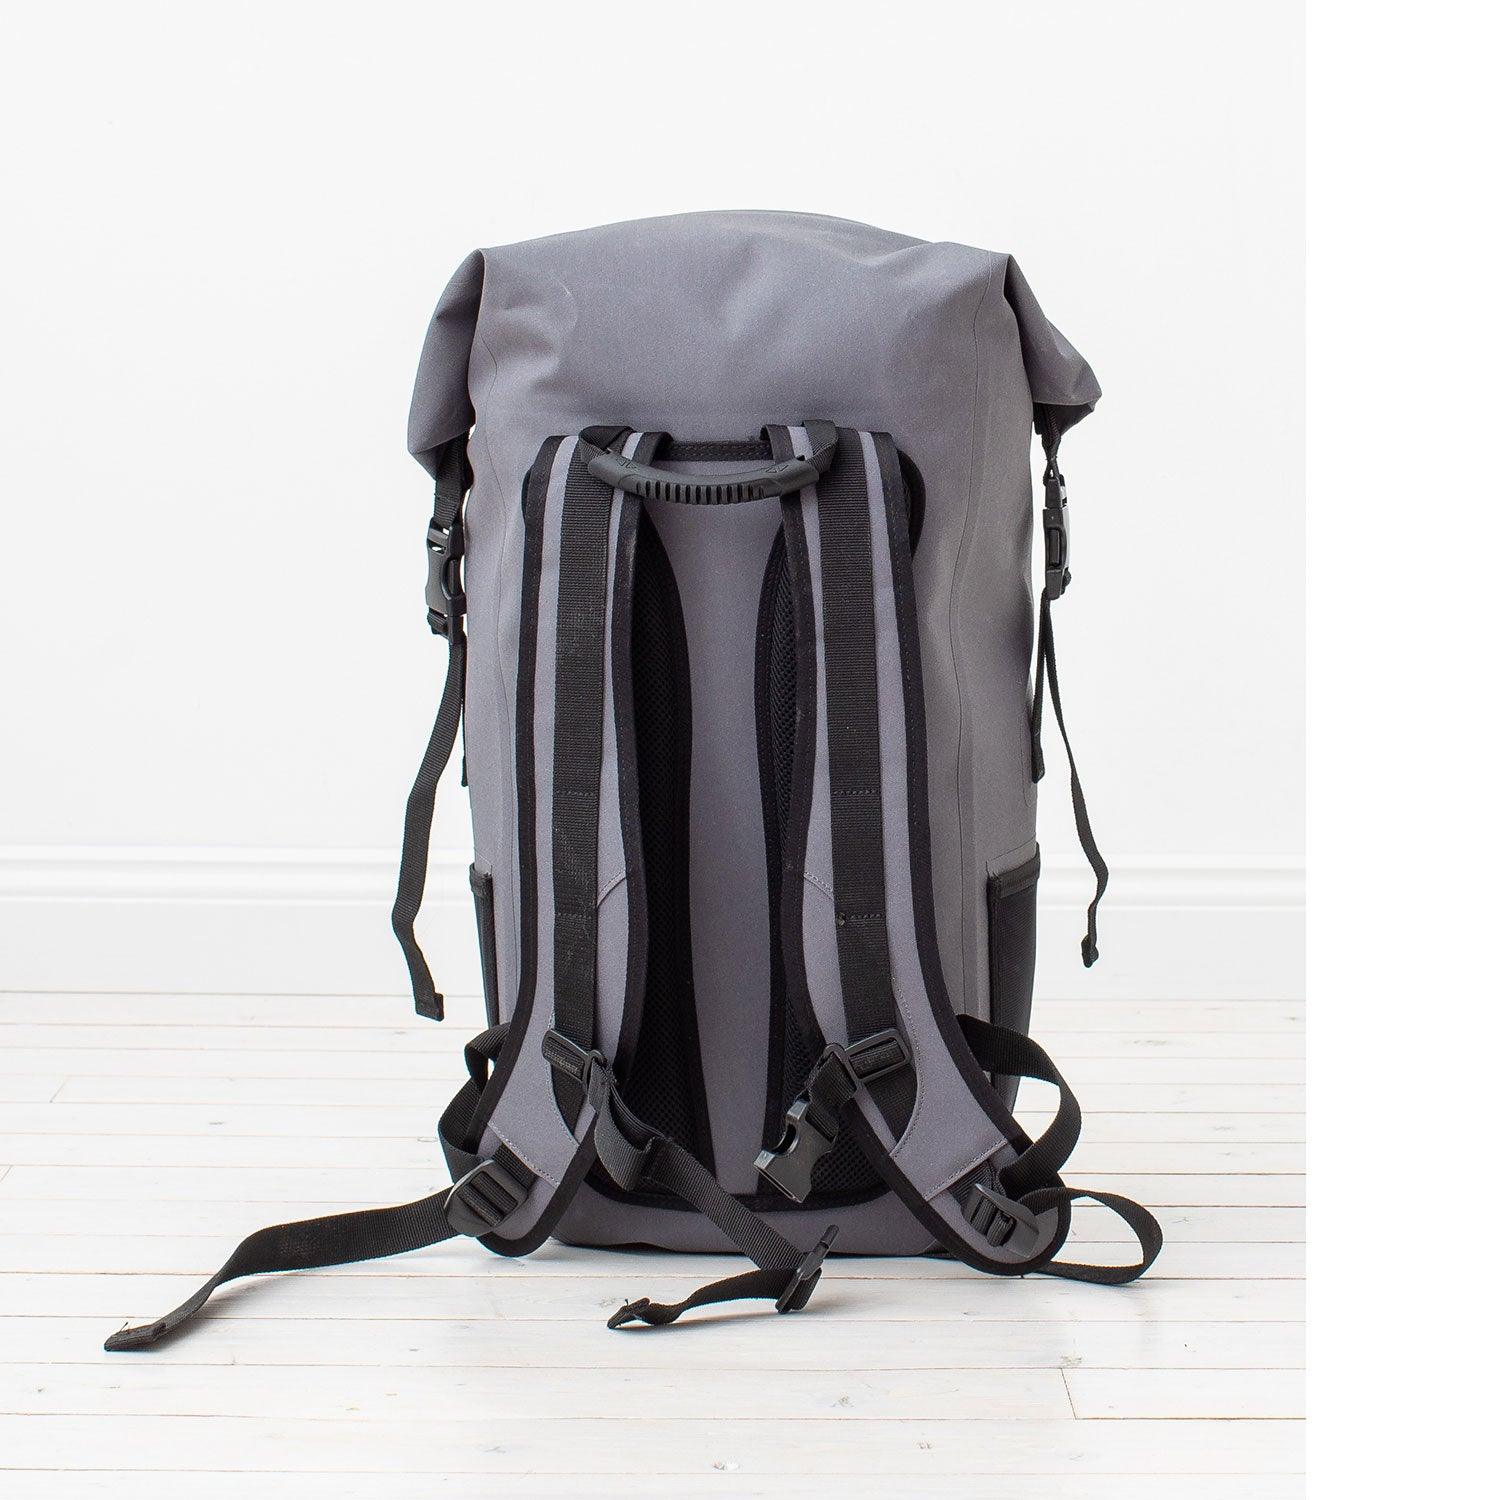 Produktbild von zubehör " Packsack / Backpack-Dry Edition Trockensack-30 Liter " der Marke Lite Venture für 69.95 €. Erhältlich online bei Lite Venture ( www.liteventure.de )